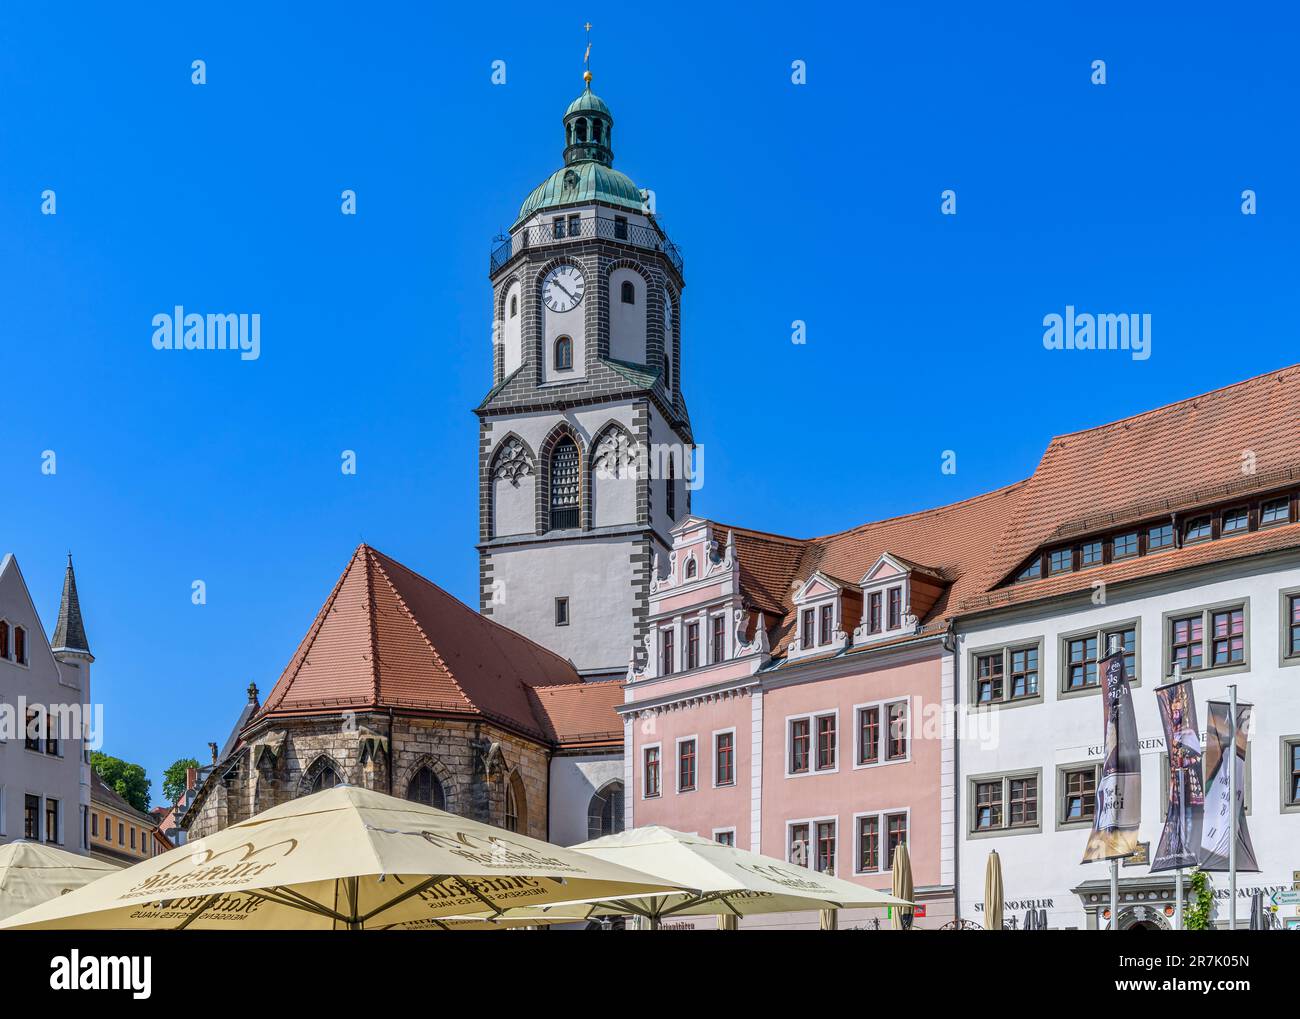 Die schöne Altstadt Meissen bei Dresden im Freistaat Sachsen. An einem perfekten Sommertag mit hellblauem Himmel aufgenommen. Stockfoto